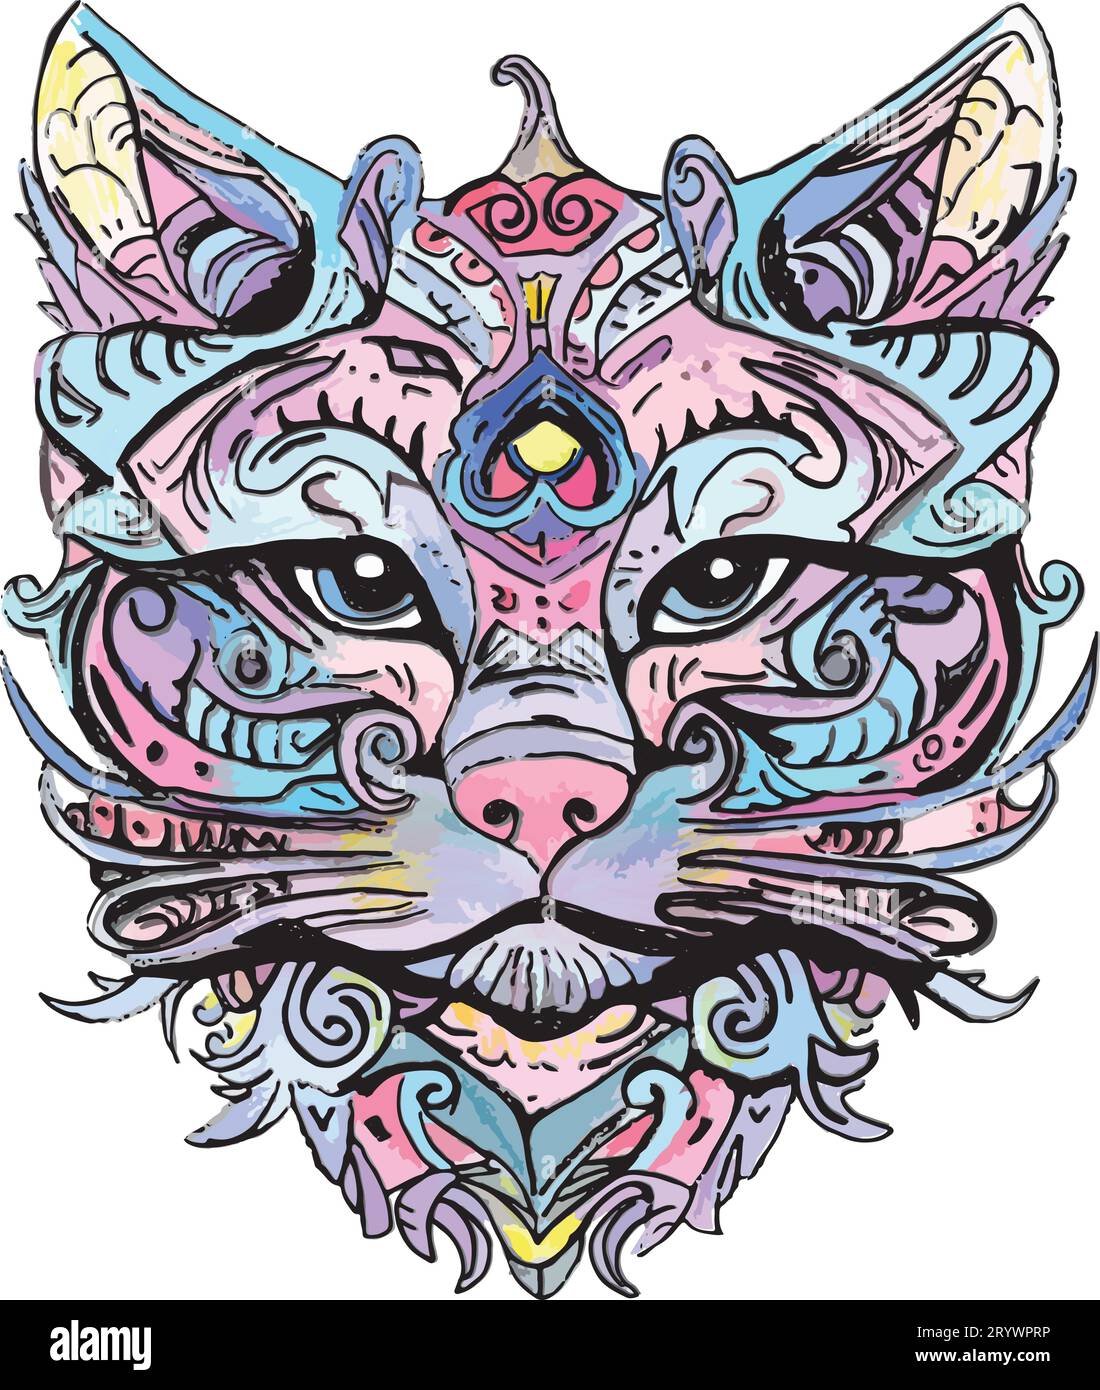 Illustration de visage de chat, dessin au trait multicolore, dessiné à la main Illustration de Vecteur